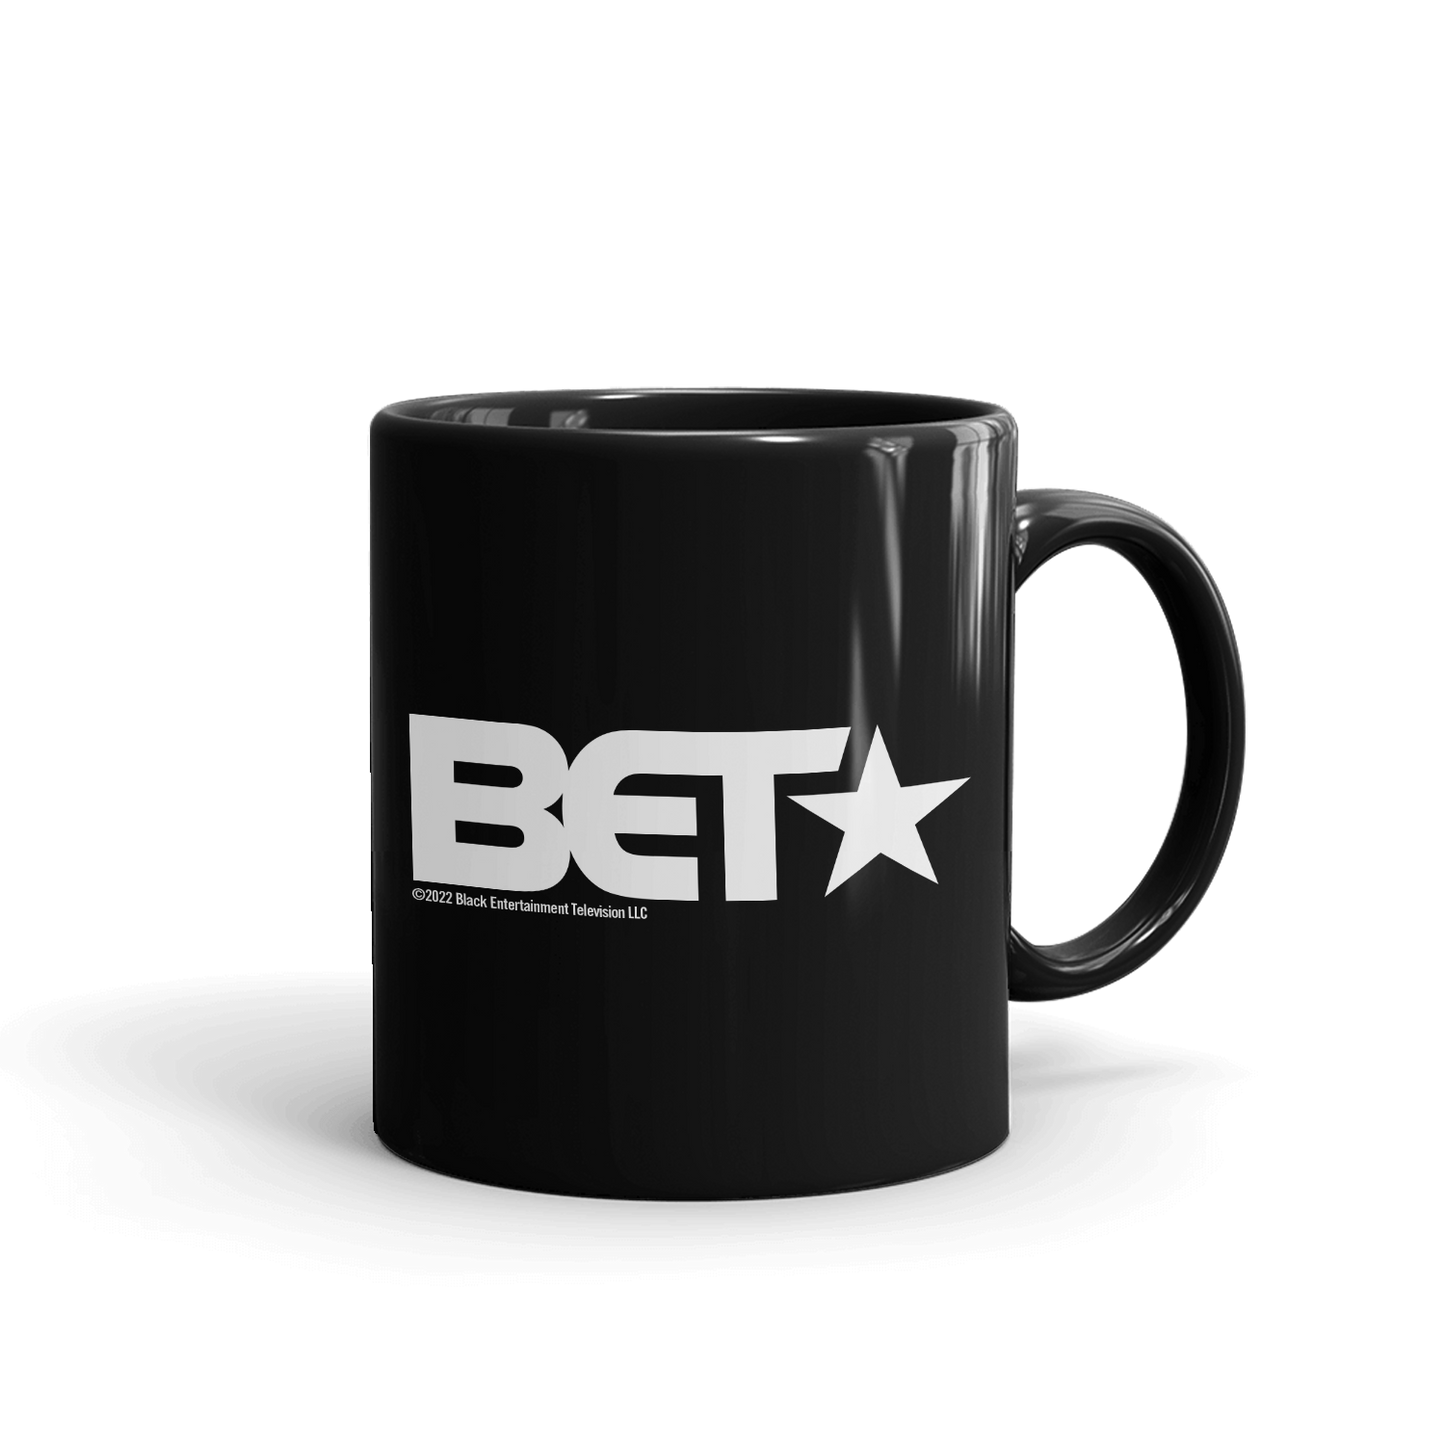 BET Black Is In The Name Black Mug